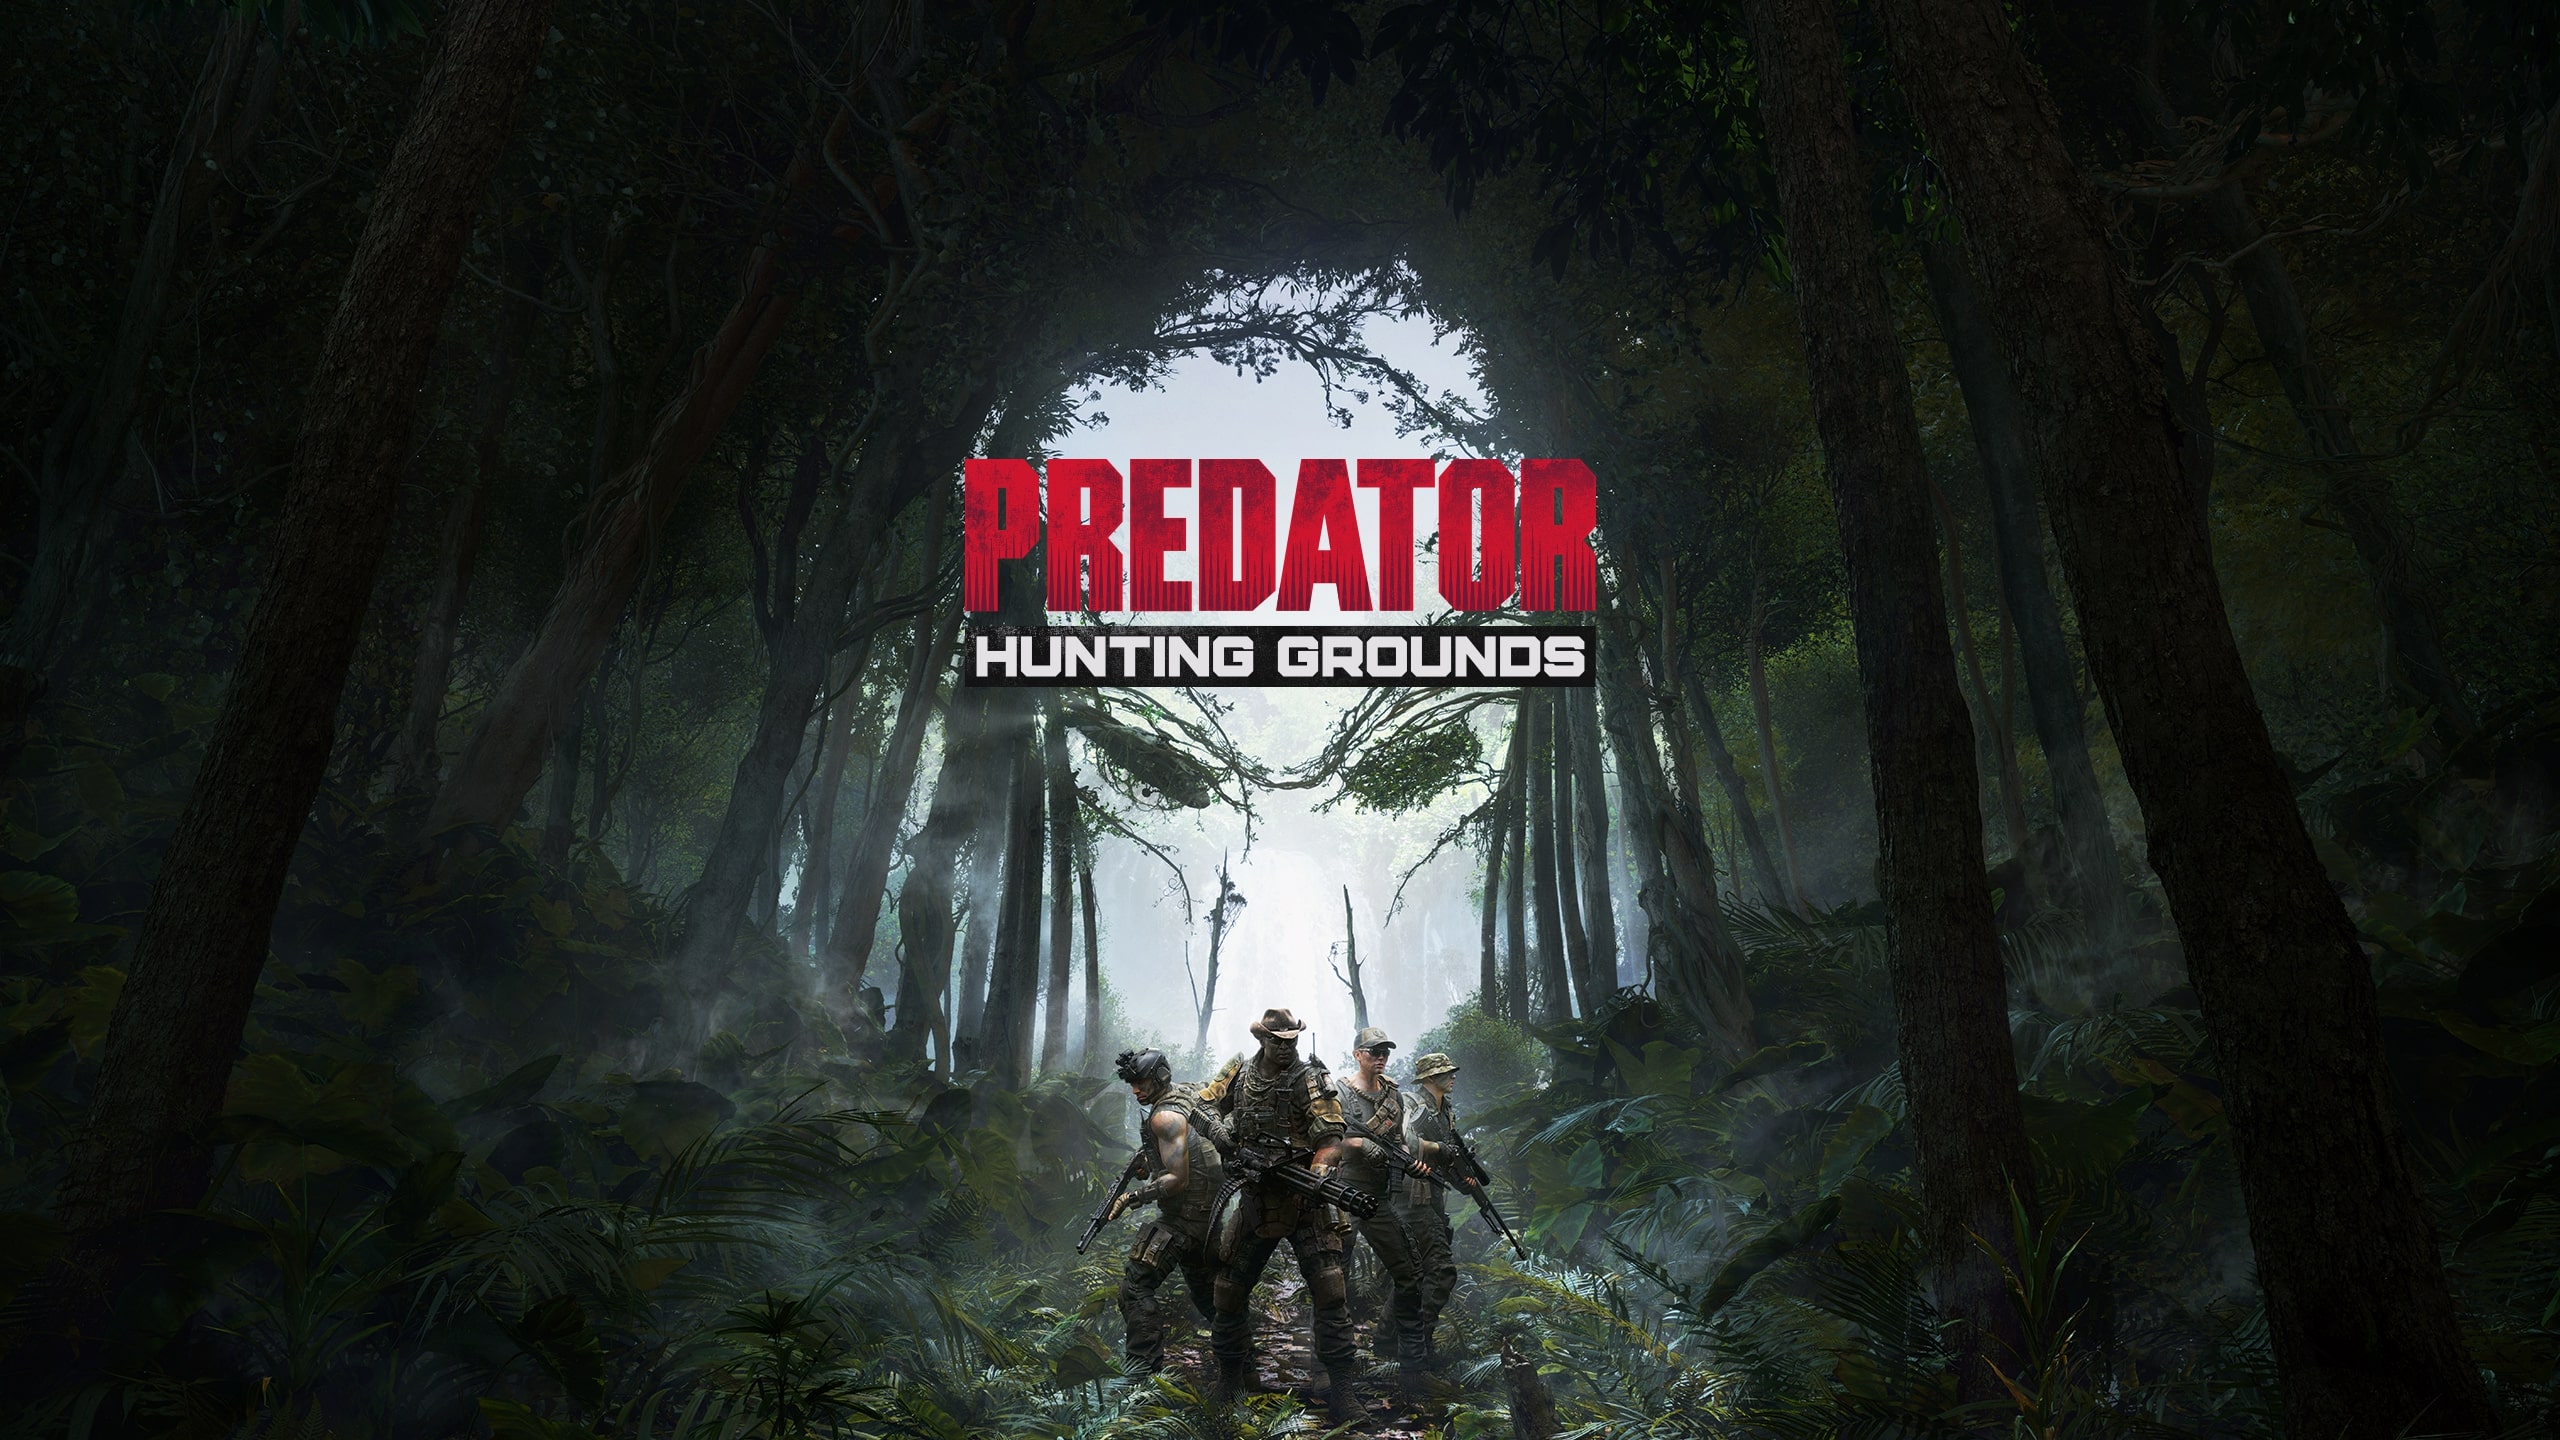 So spielt man Predator: Hunting Grounds auf dem Mac